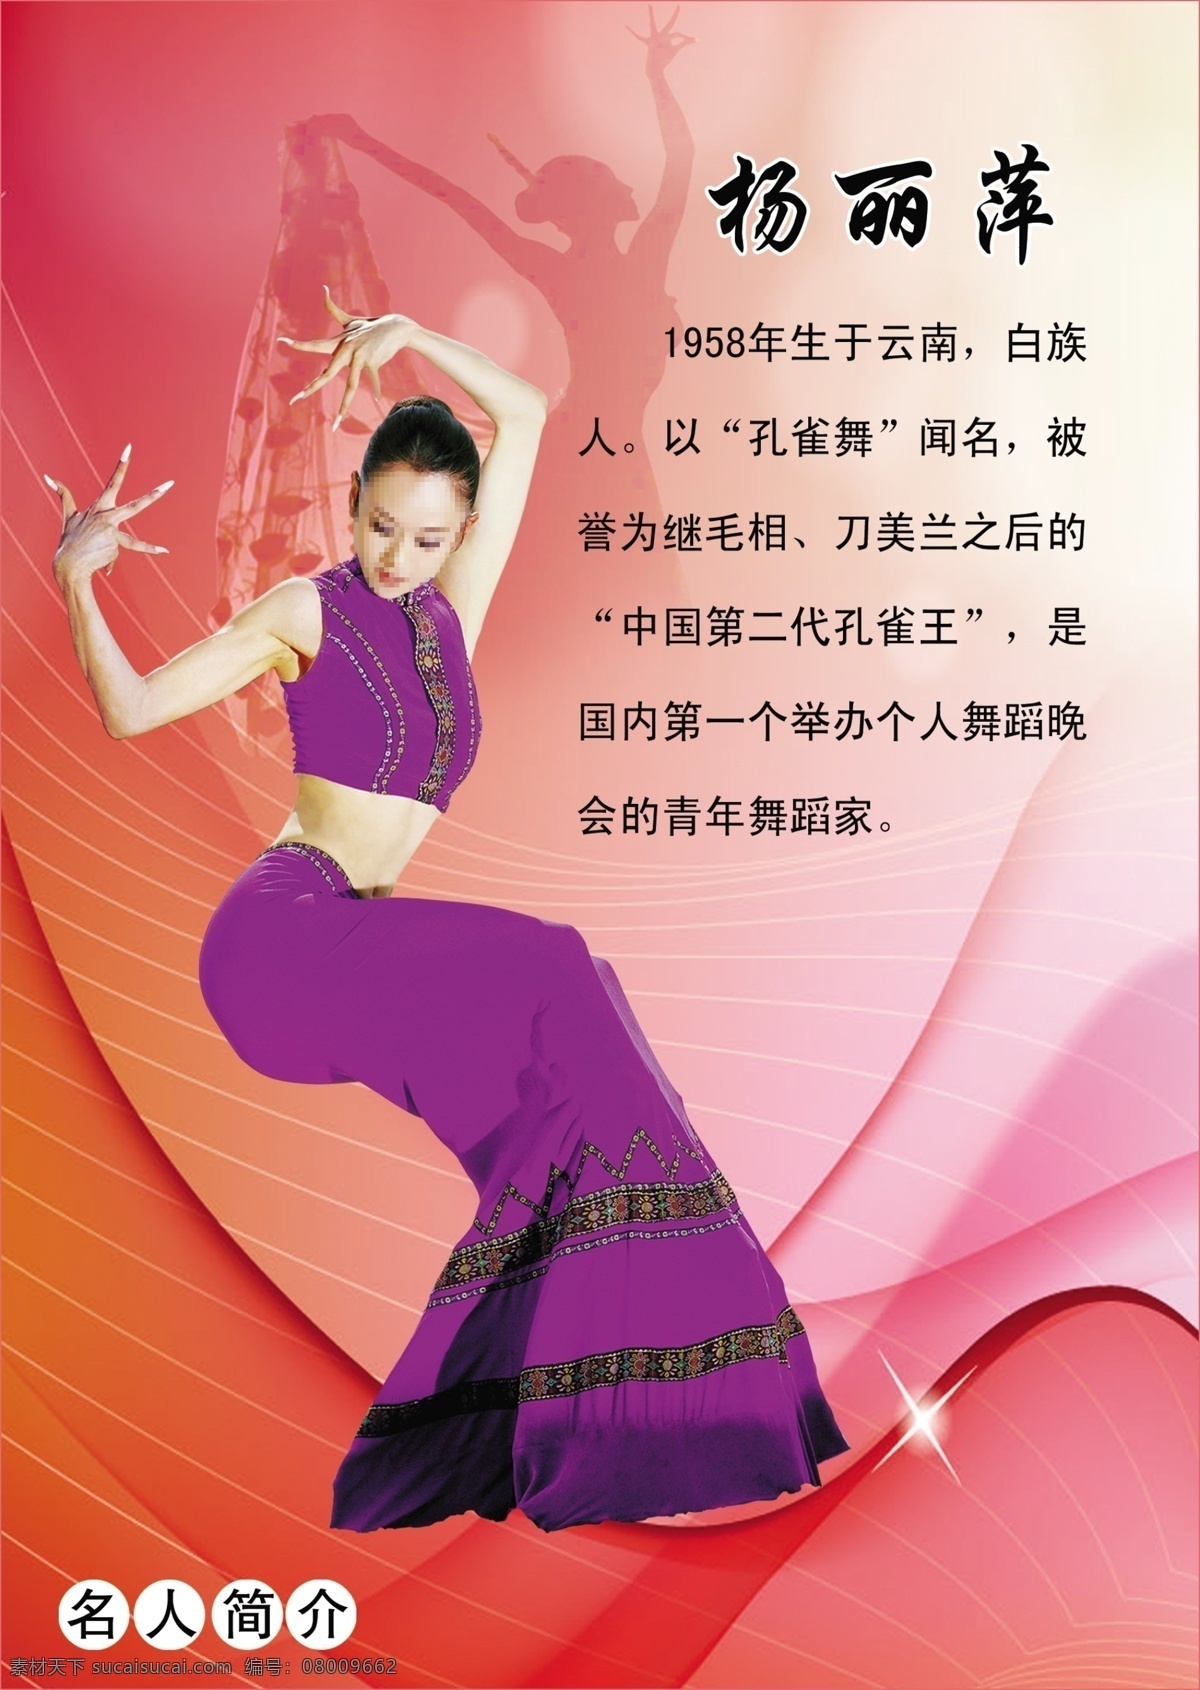 杨丽萍简介 杨丽萍 梦幻图片 舞蹈家 展板模板 广告设计模板 源文件